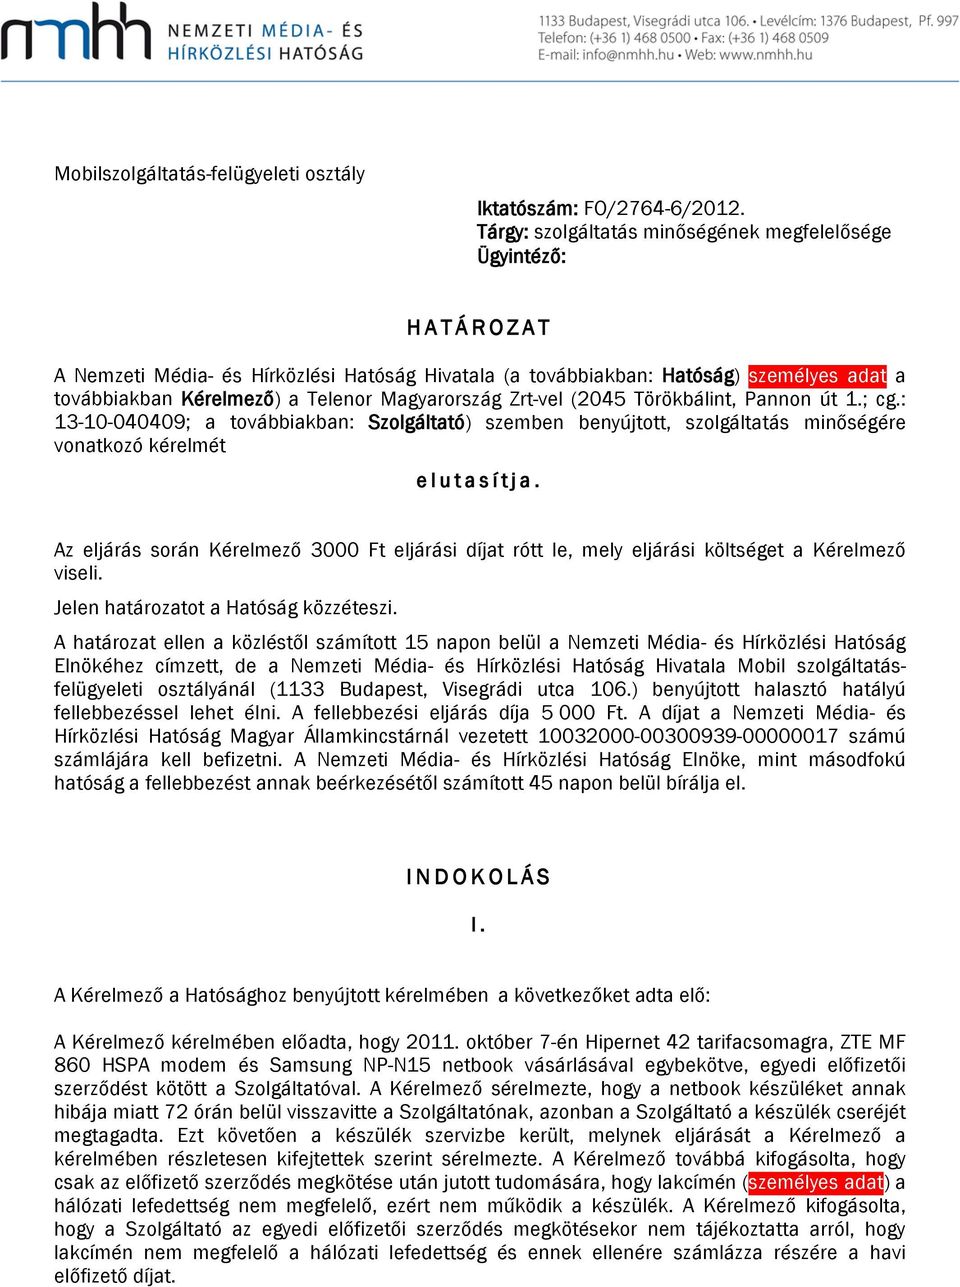 Magyarország Zrt-vel (2045 Törökbálint, Pannon út 1.; cg.: 13-10-040409; a továbbiakban: Szolgáltató) szemben benyújtott, szolgáltatás minőségére vonatkozó kérelmét elutasítja.